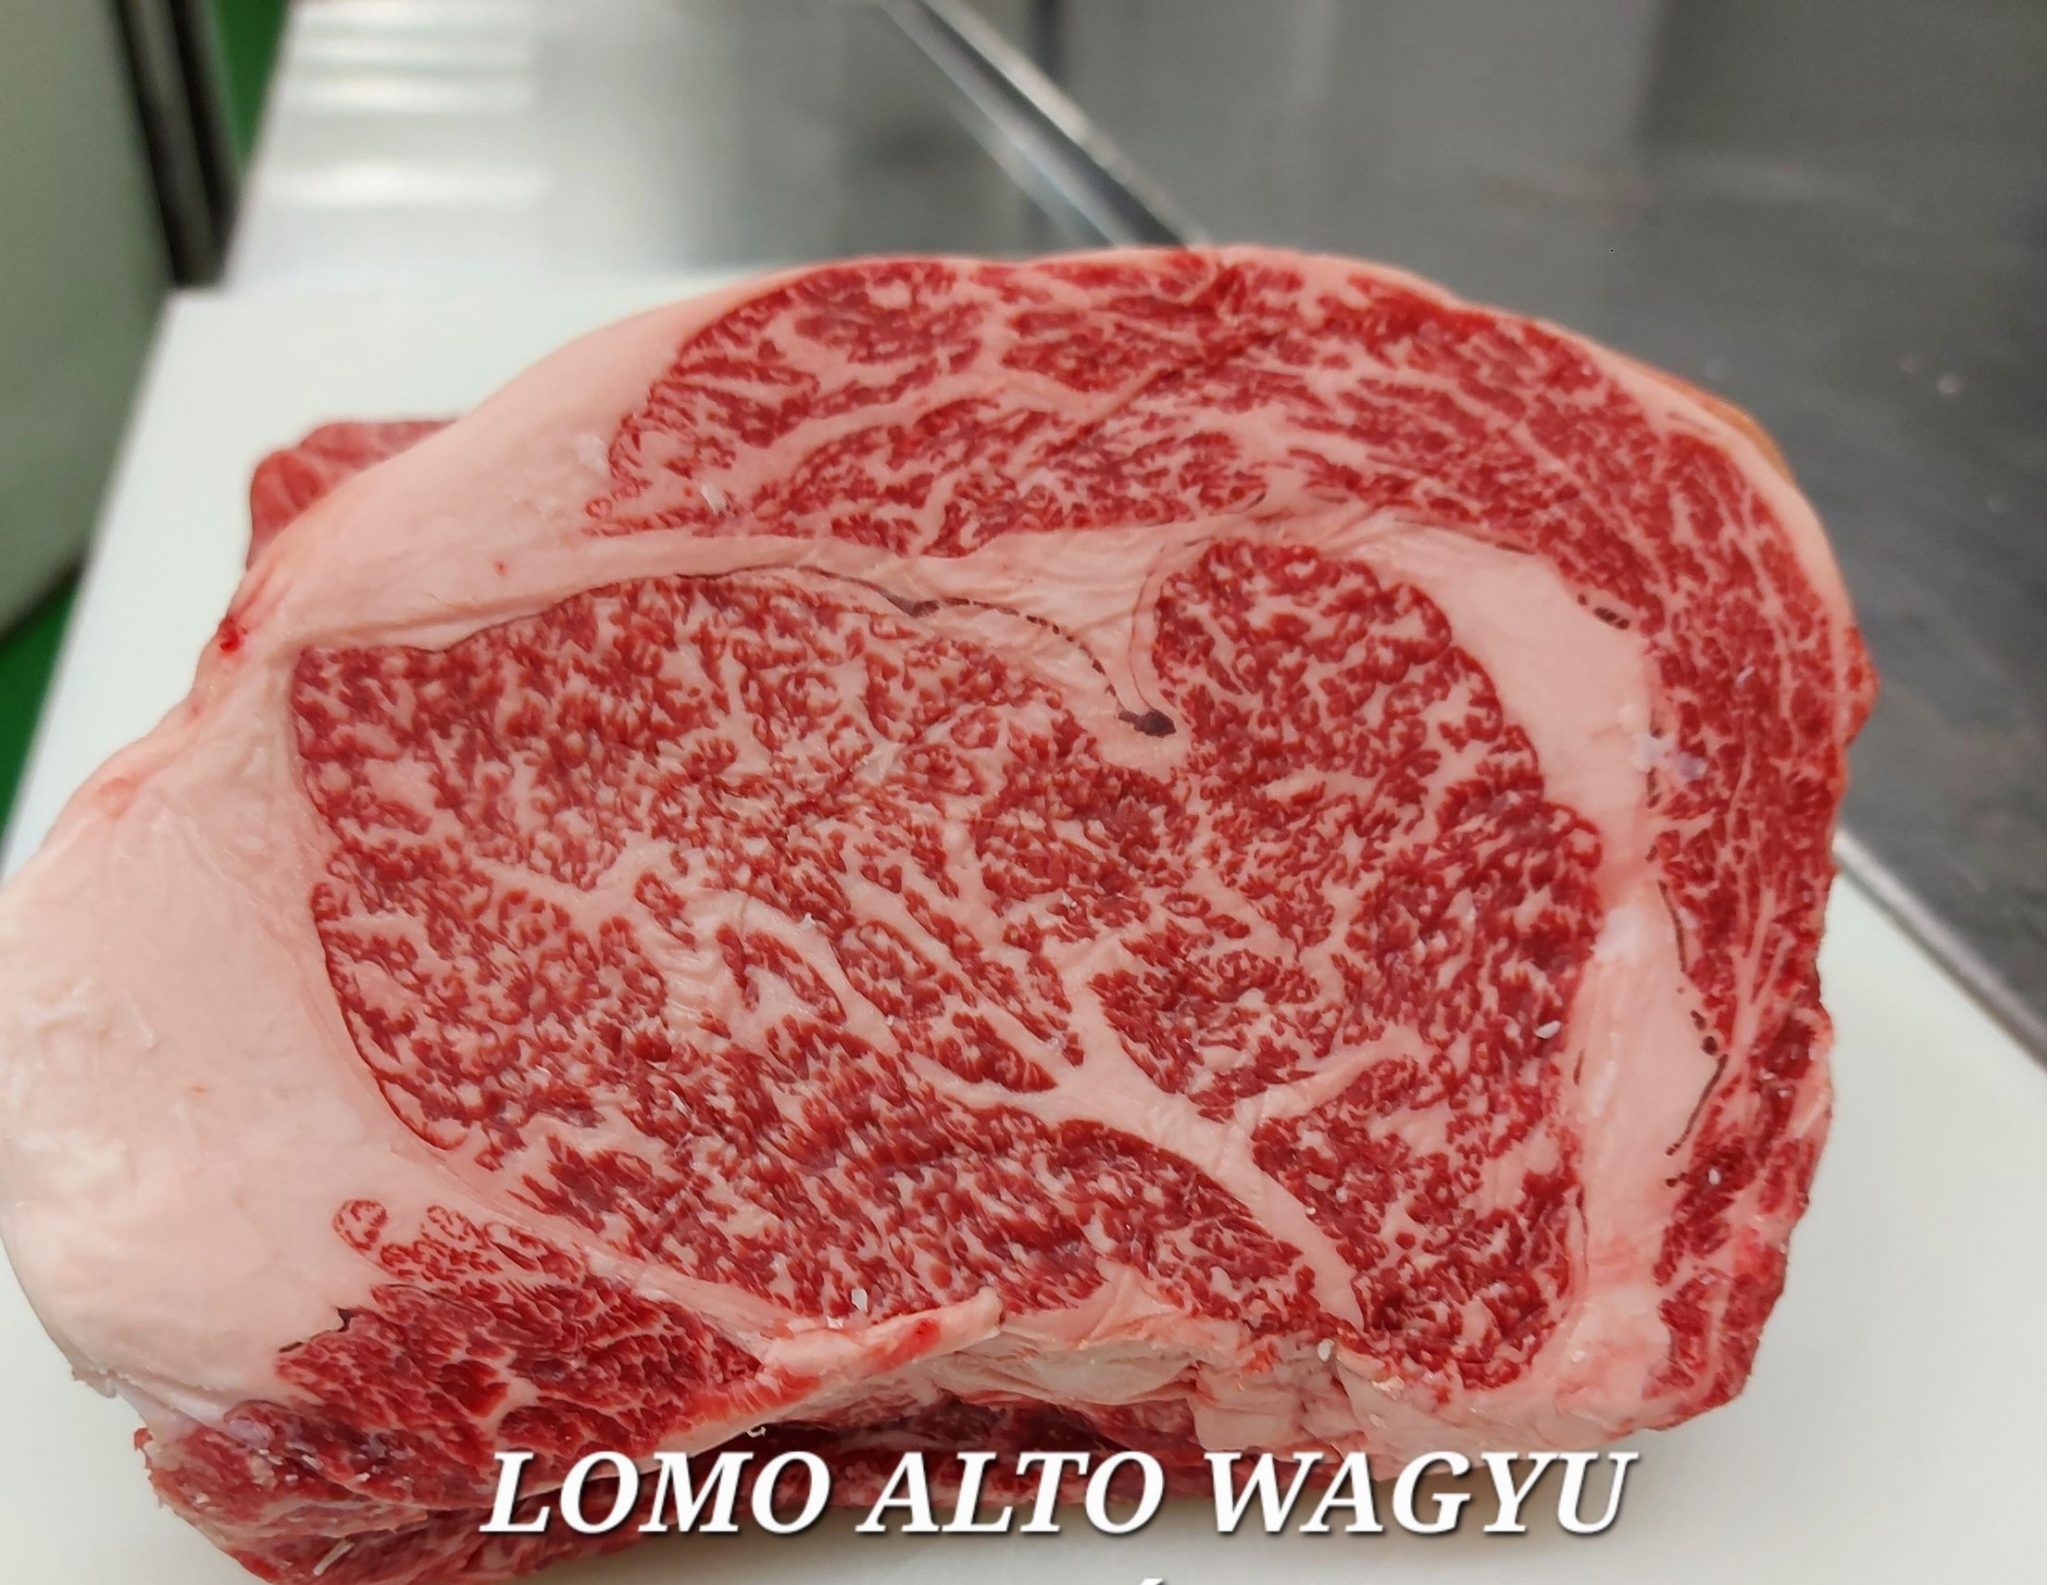 A qué sabe la carne de wagyu?